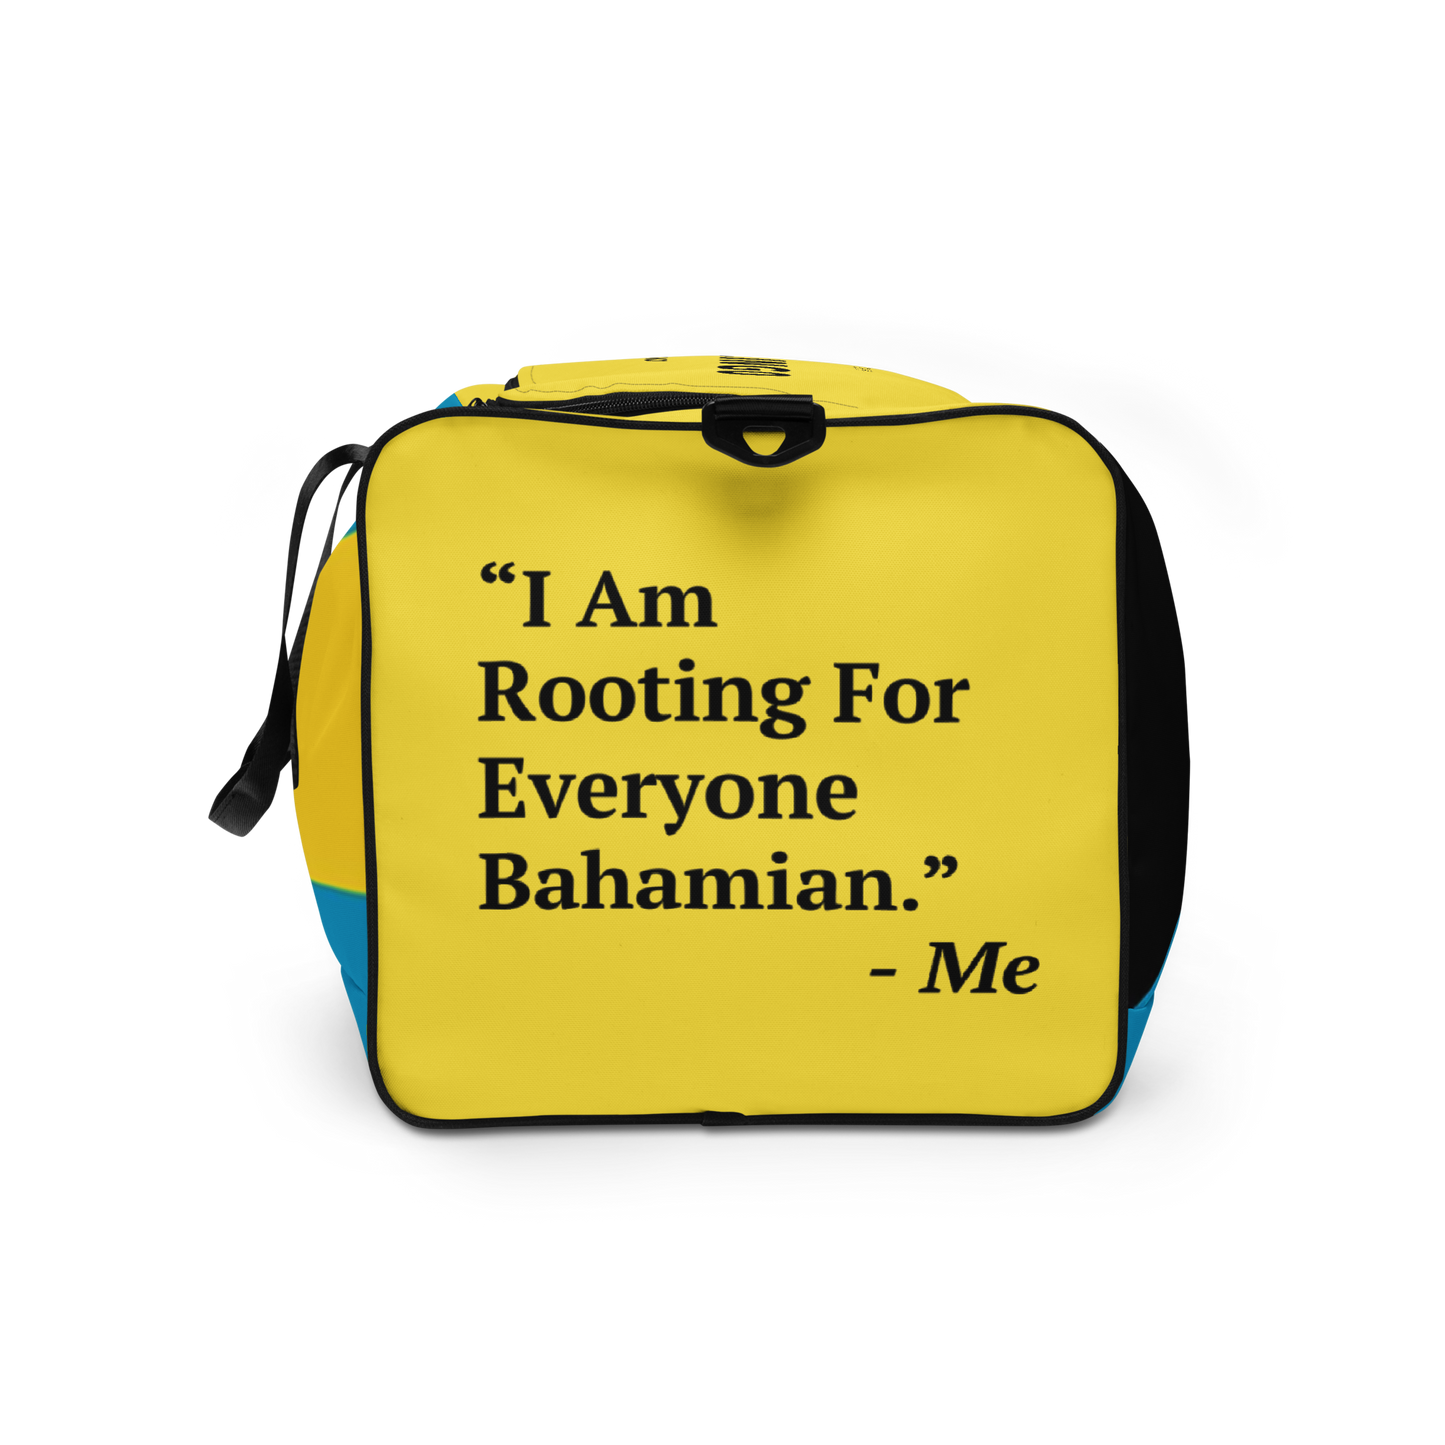 Bahamas Duffle bag